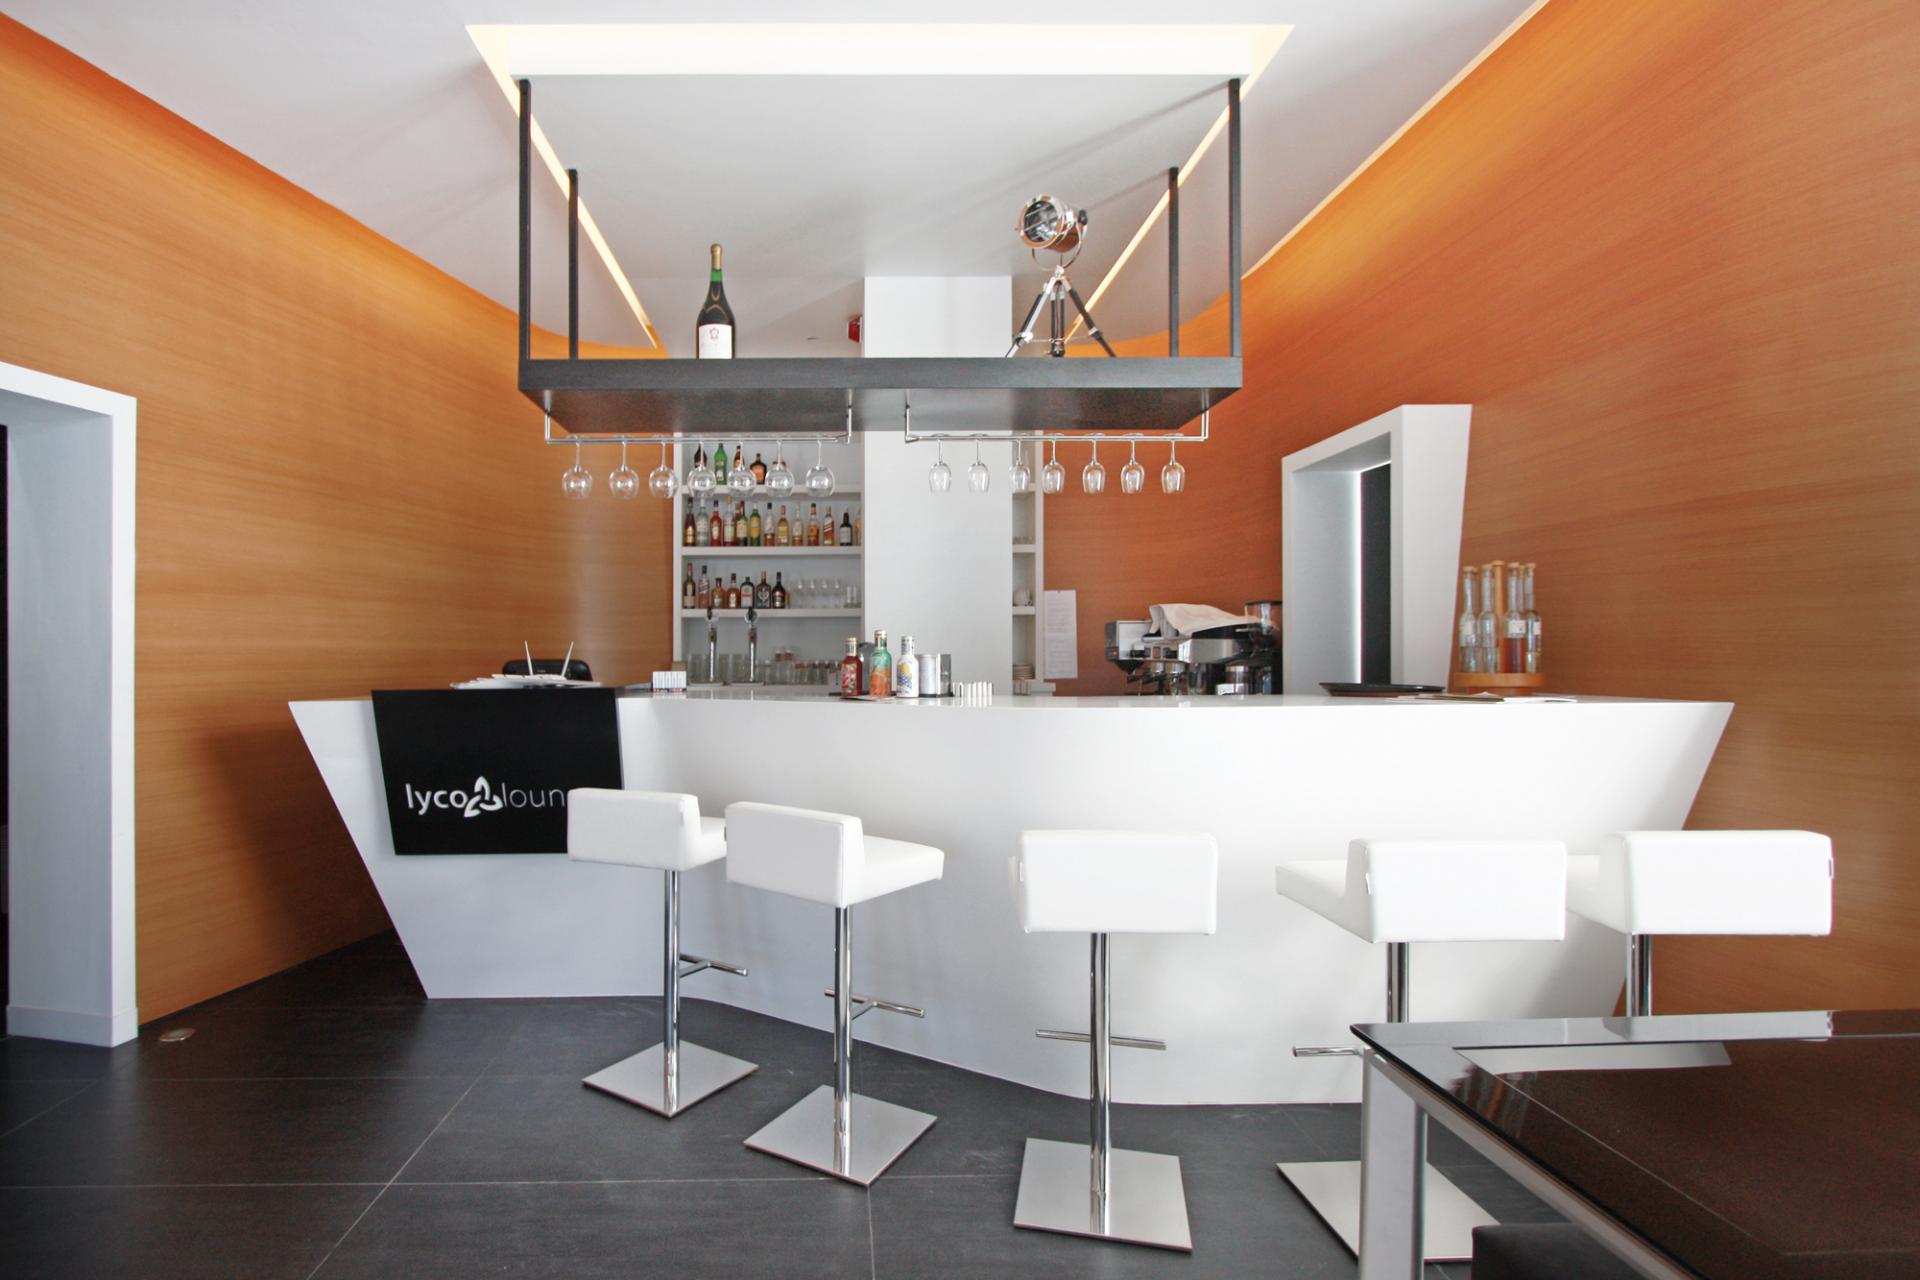 Прекрасный интерьер кофе-бара Lyco Lounge в Салониках